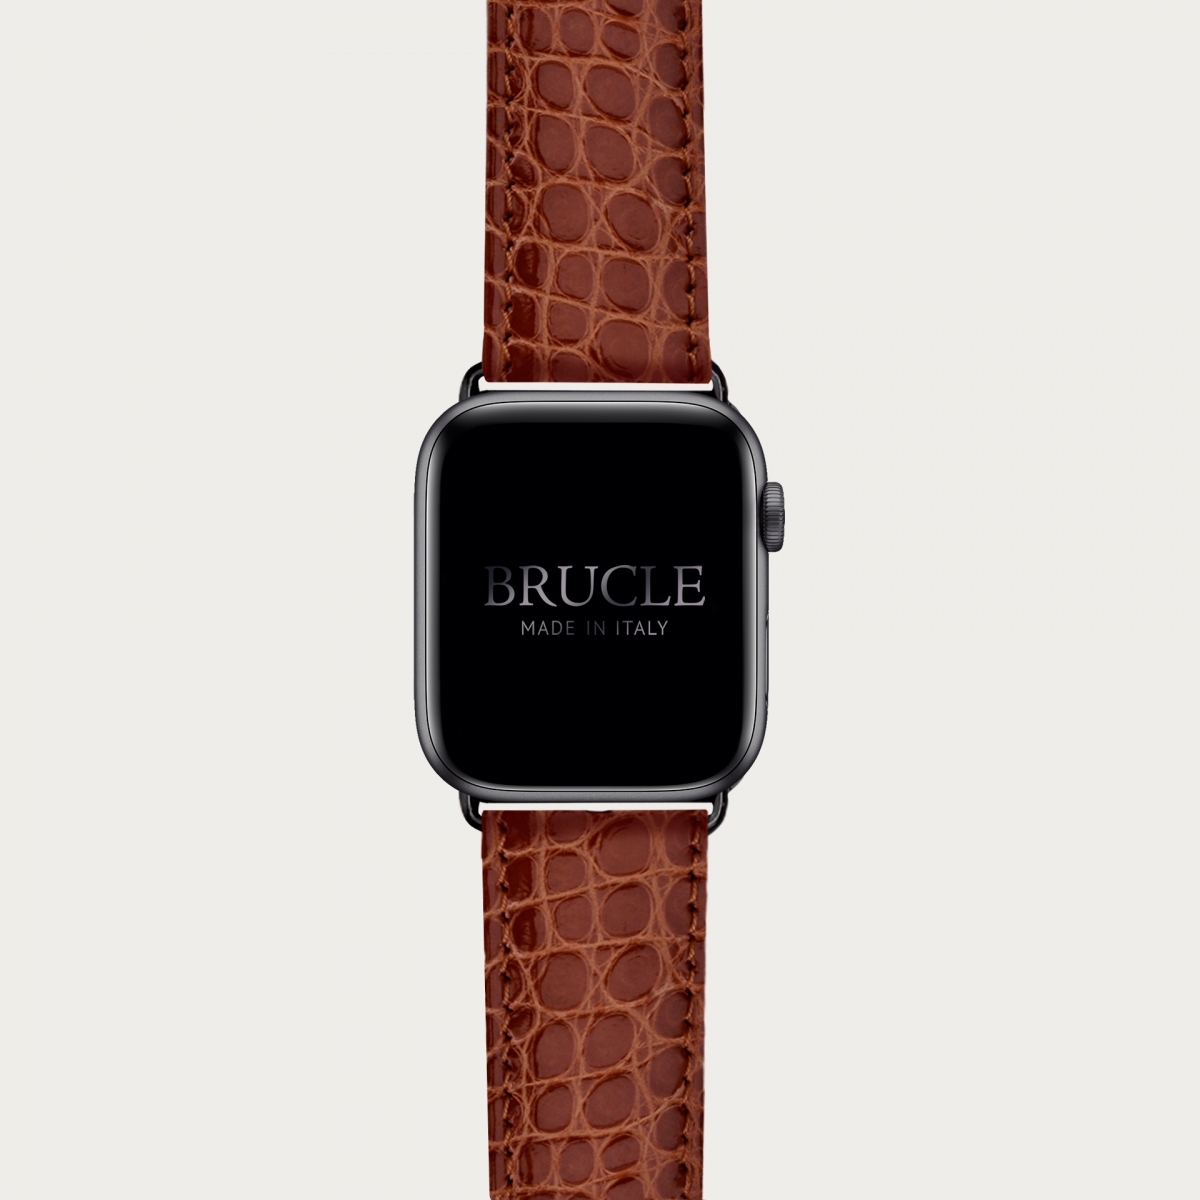 Alligator Armband kompatibel mit Apple Watch / Samsung Smartwatch, Gold-braun